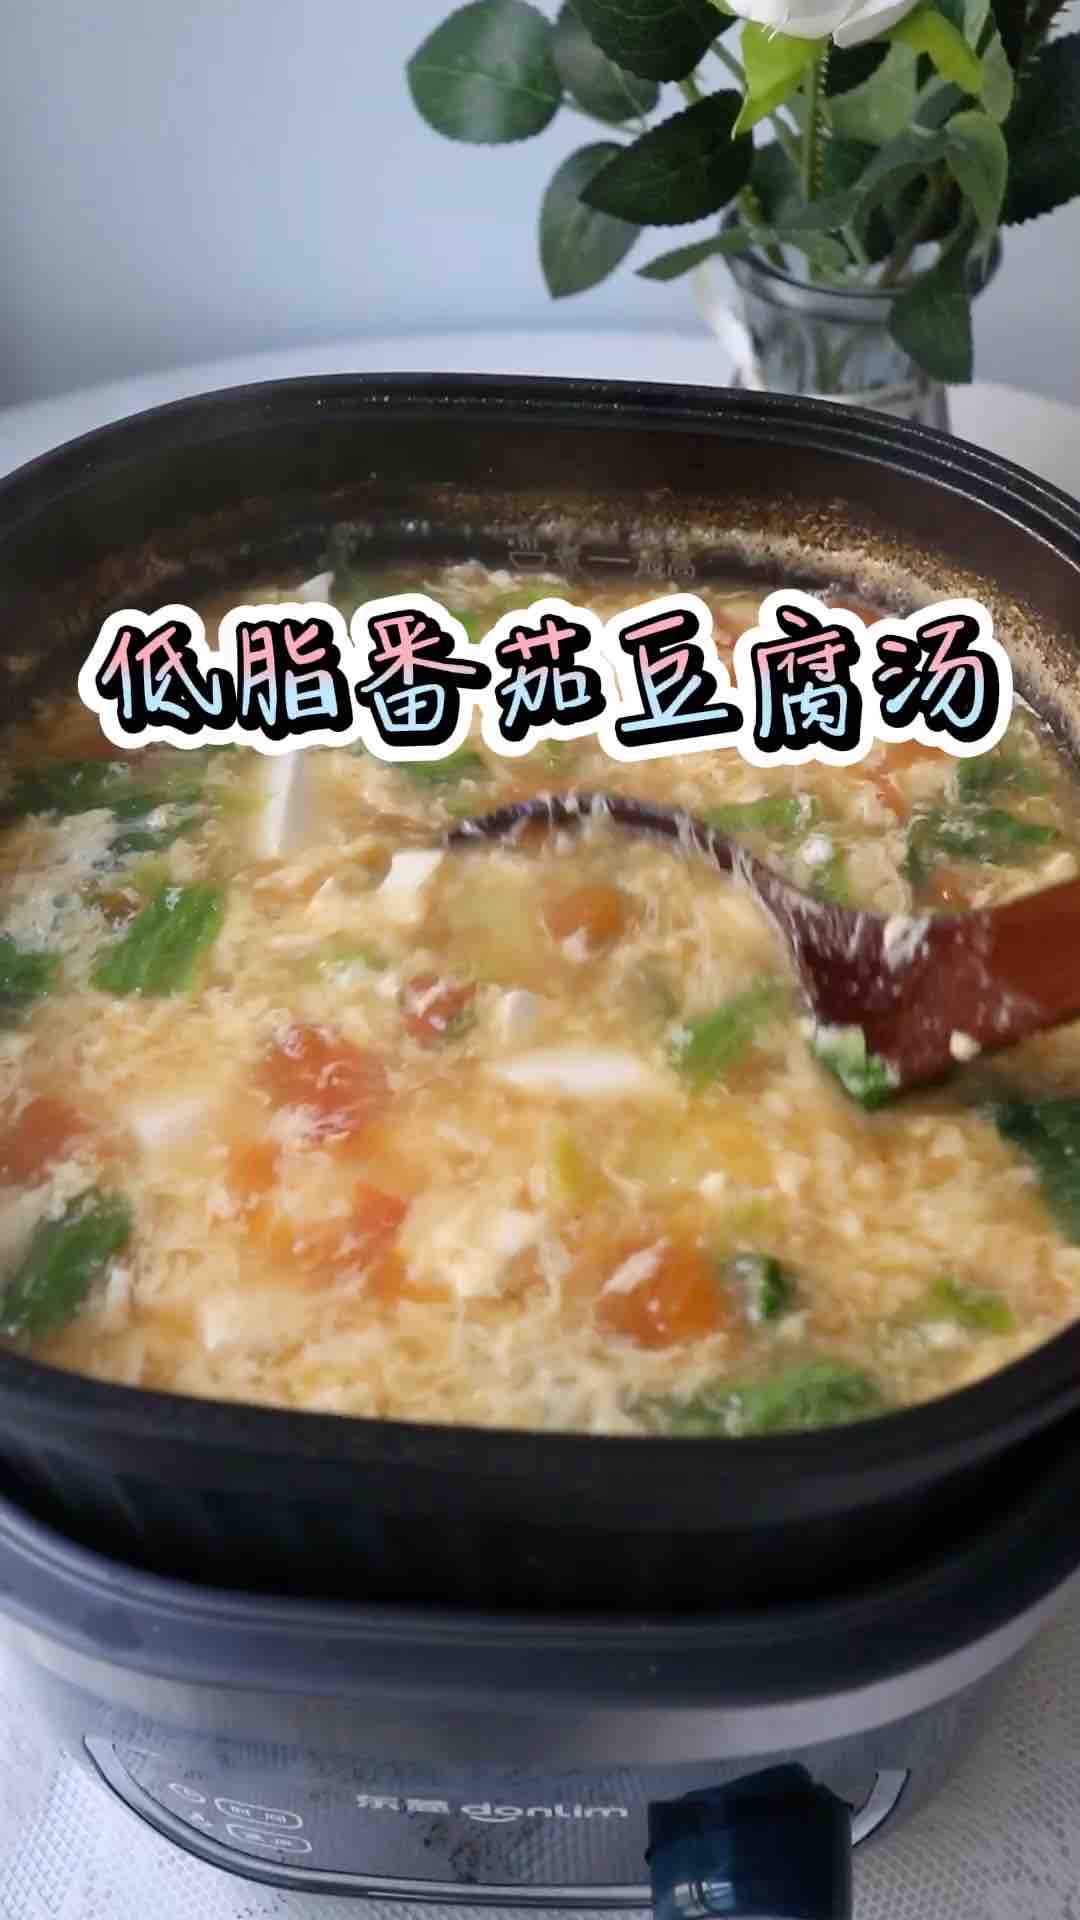 Low Fat Tomato Tofu Soup recipe